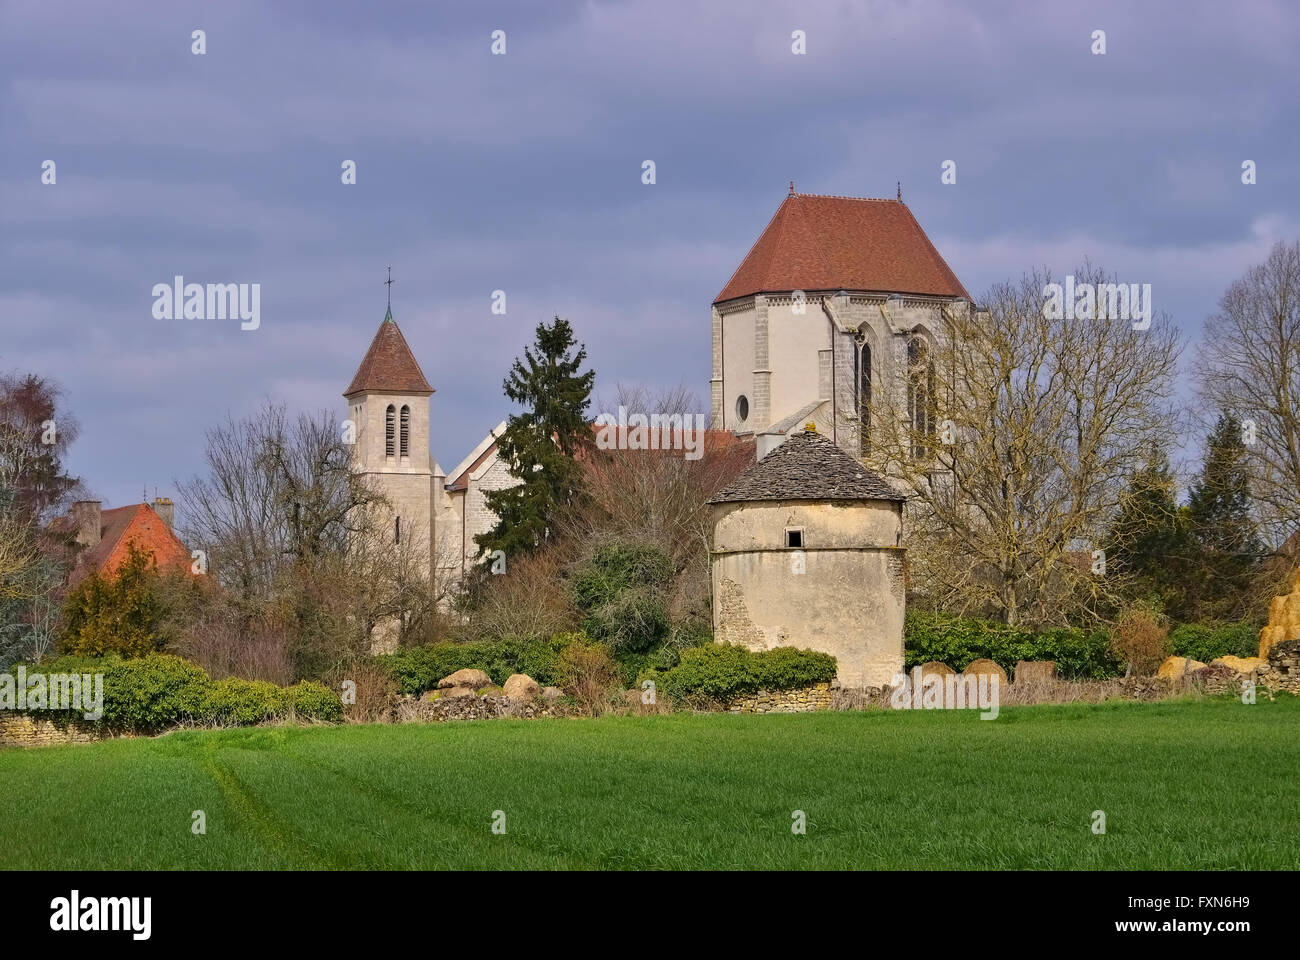 Romanische Kirche in Saint Thibault Burgund, Frankreich - romanische Kirche von Saint Thibault in Burgund, Frankreich Stockfoto